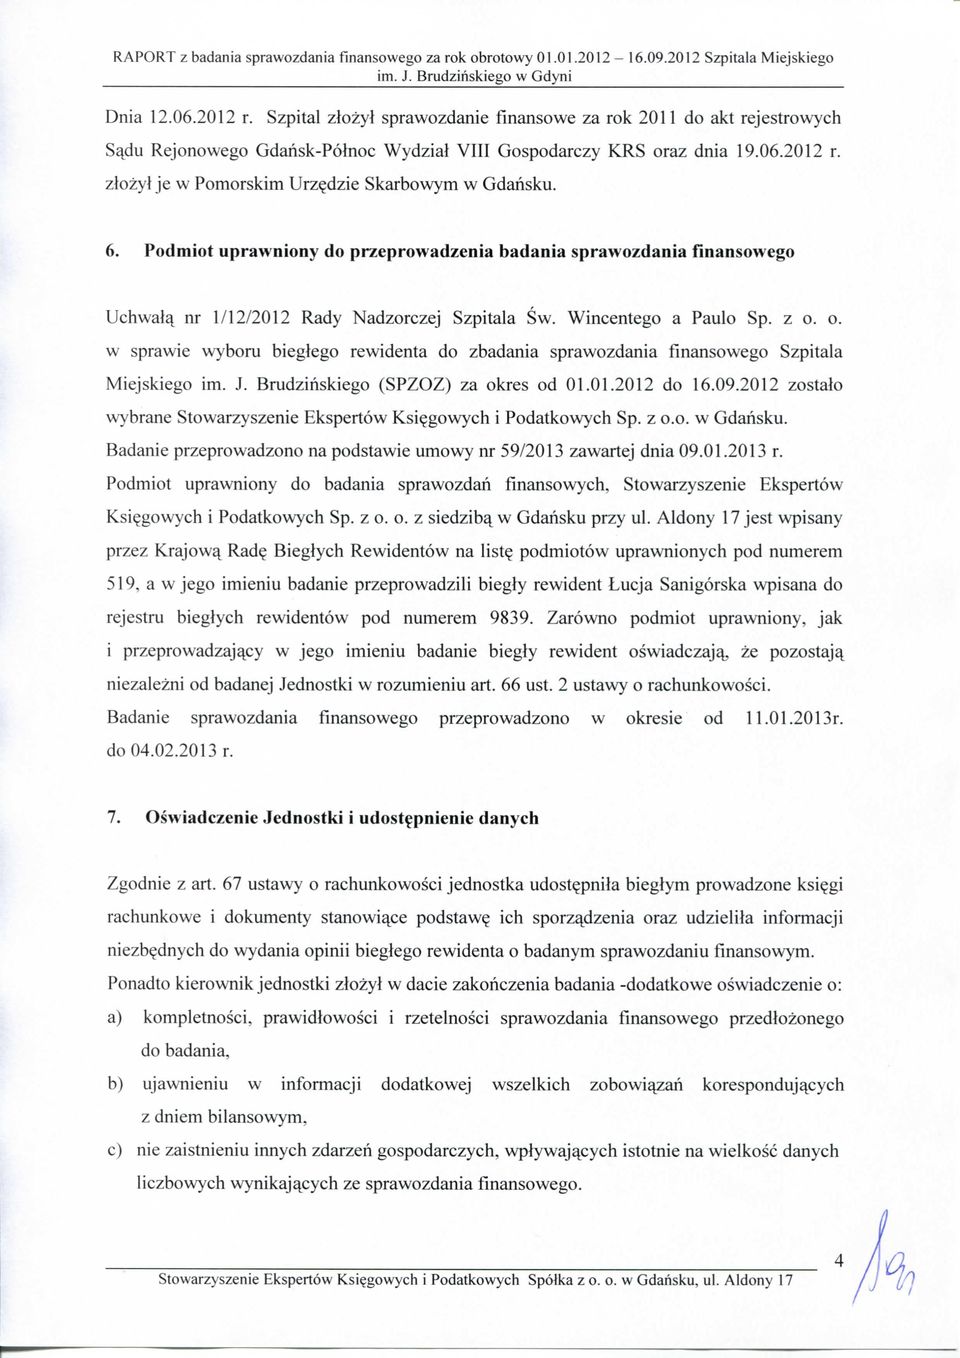 o. w sprawie wyboru bieglego rewidenta do zbadania sprawozdania finansowego Szpitala Miejskiego im. J. Brudzinskiego (SPZOZ) za okres od 01.01.2012 do 16.09.